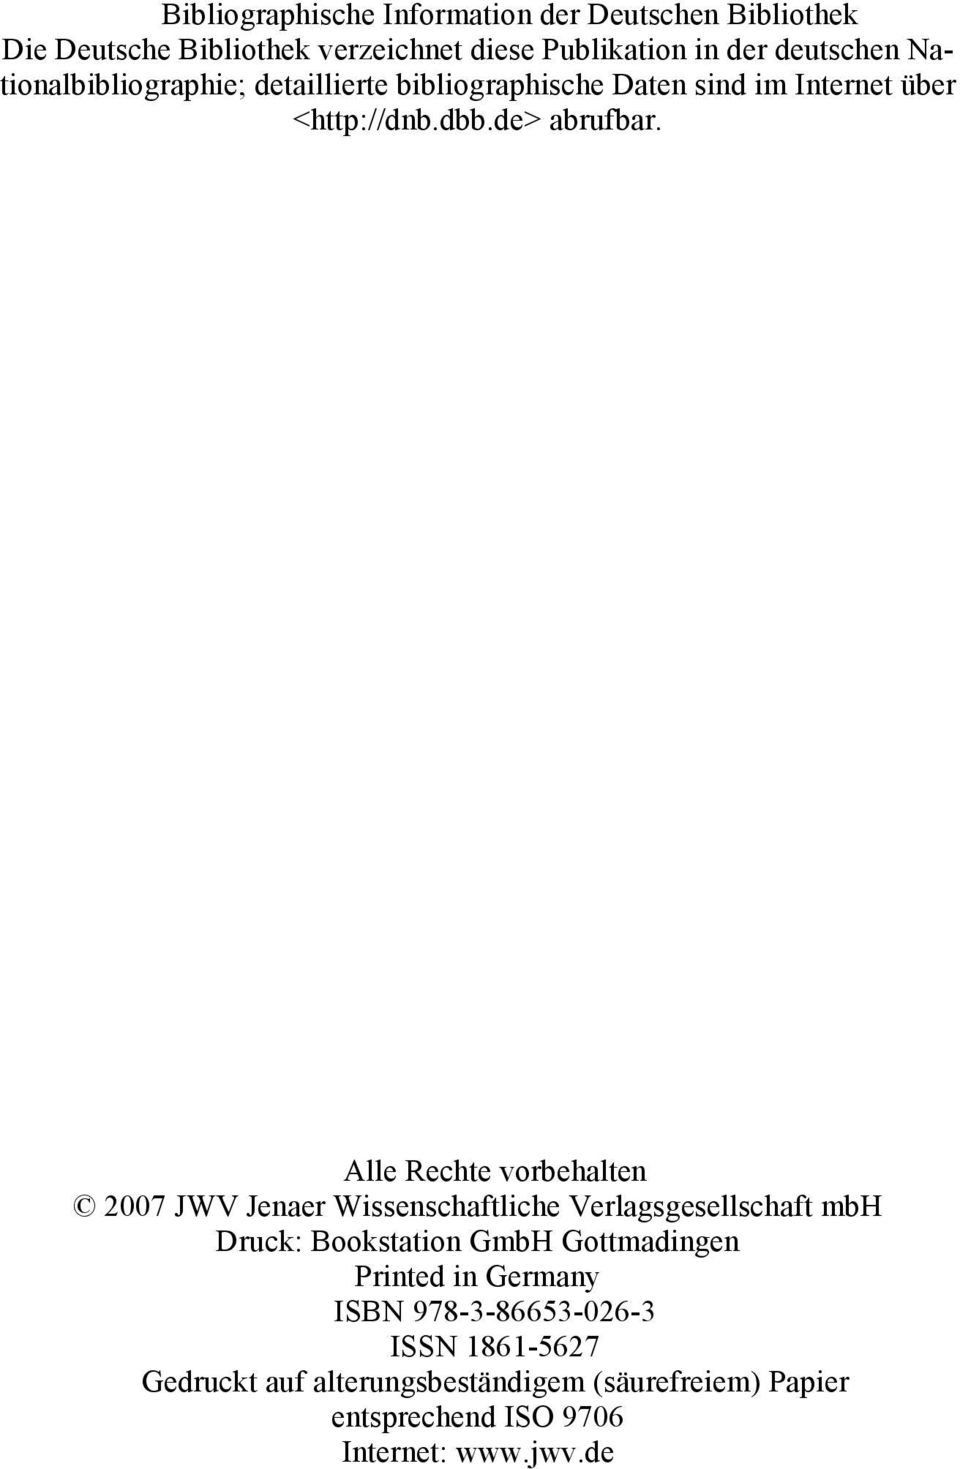 Alle Rechte vorbehalten 2007 JWV Jenaer Wissenschaftliche Verlagsgesellschaft mbh Druck: Bookstation GmbH Gottmadingen Printed